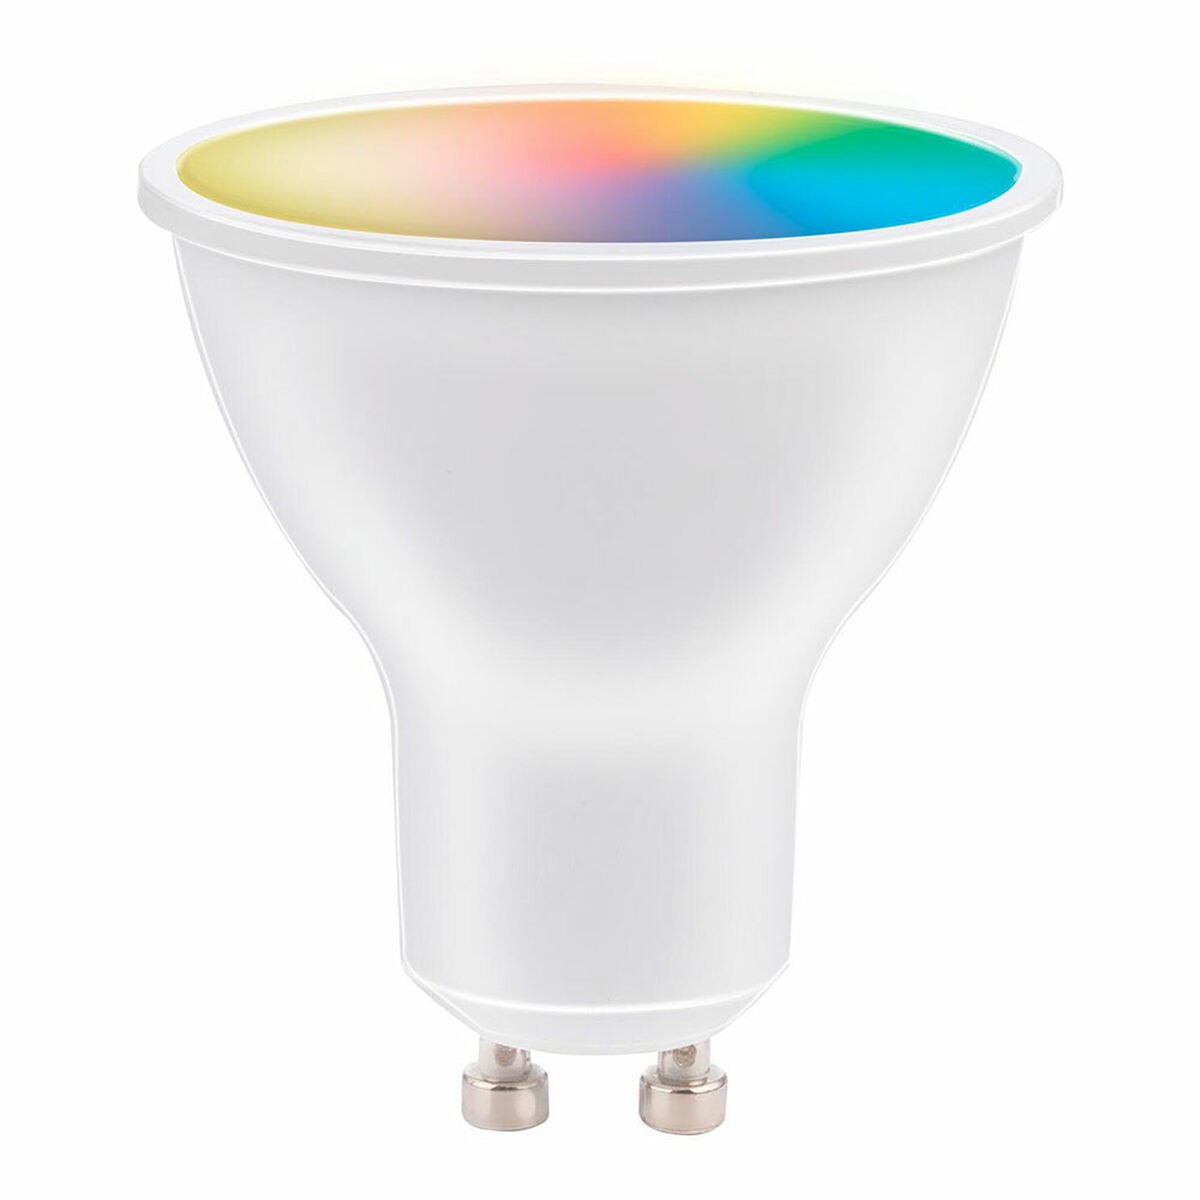 Smart Light bulb Alpina RGB 4,9 W 2700-6500 K GU10 470 lm Wi-Fi